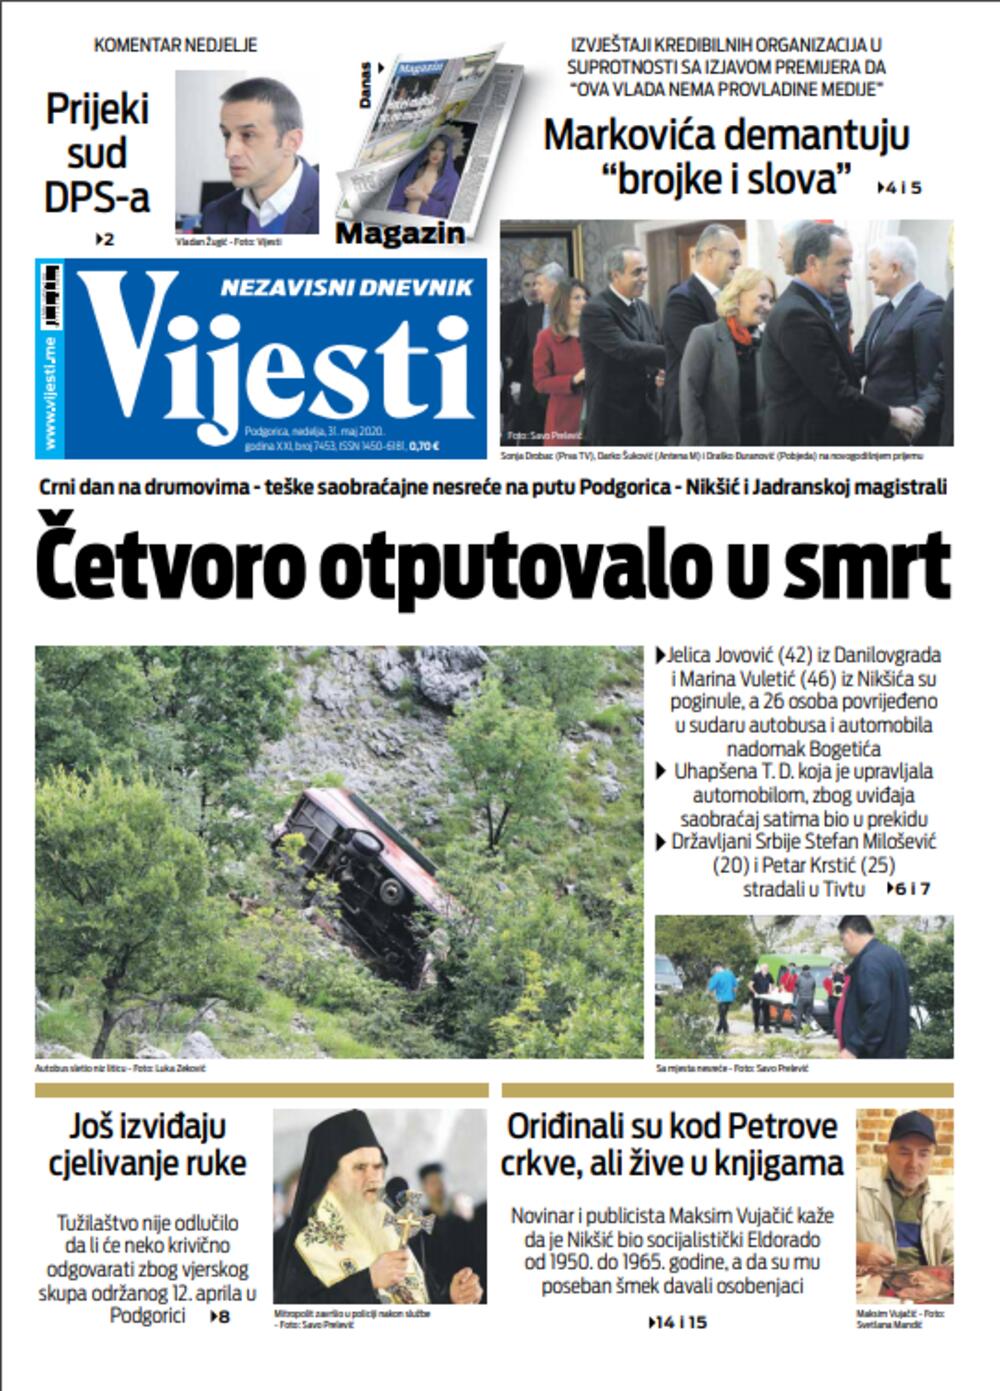 Naslovna strana "Vijesti" za 31. maj, Foto: Vijesti